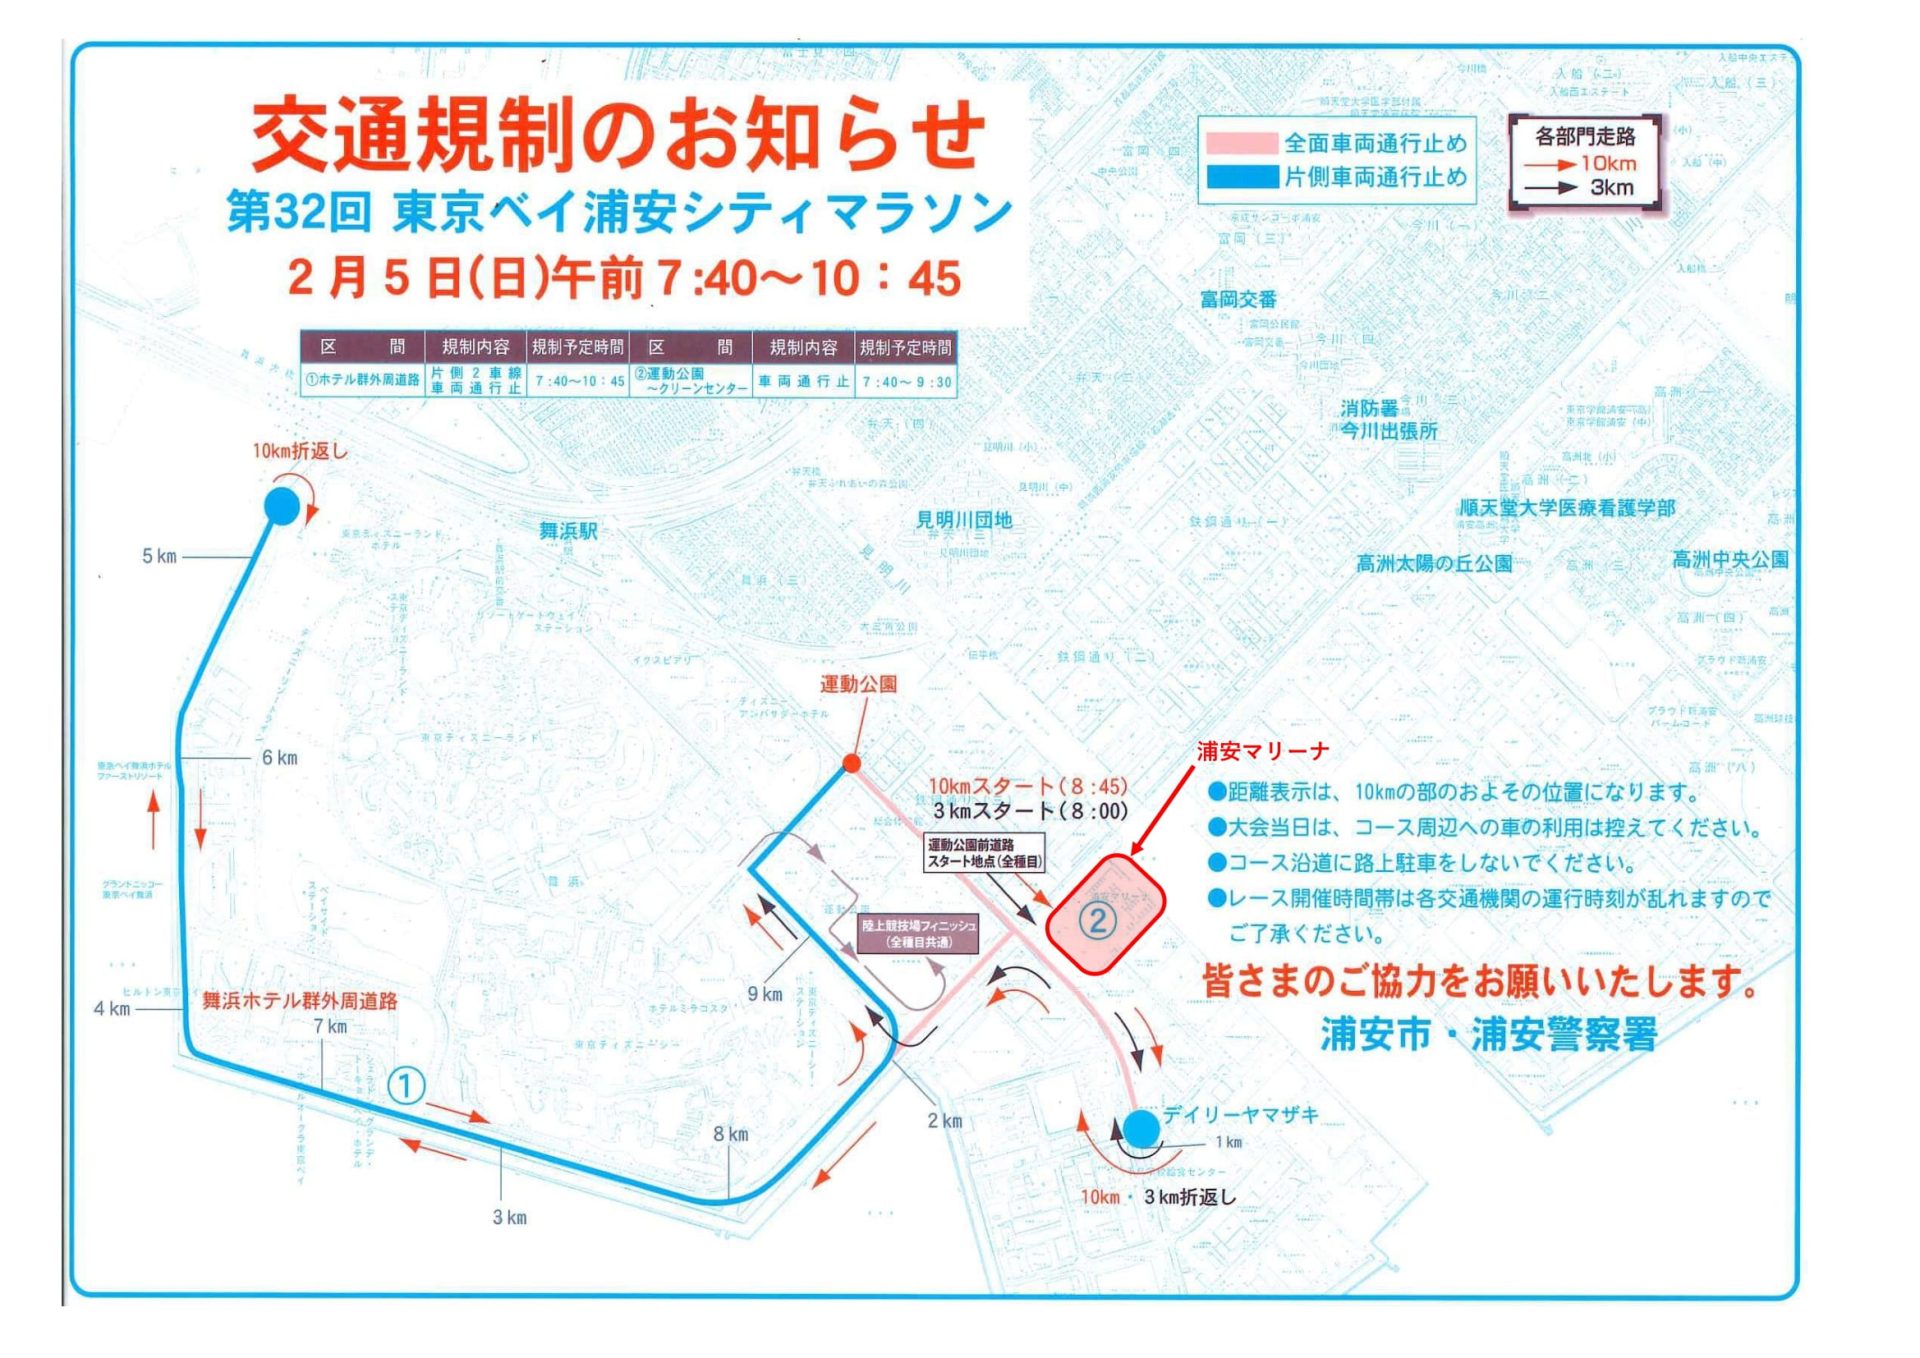 第31回東京ベイ浦安シティマラソン交通規制のお知らせ